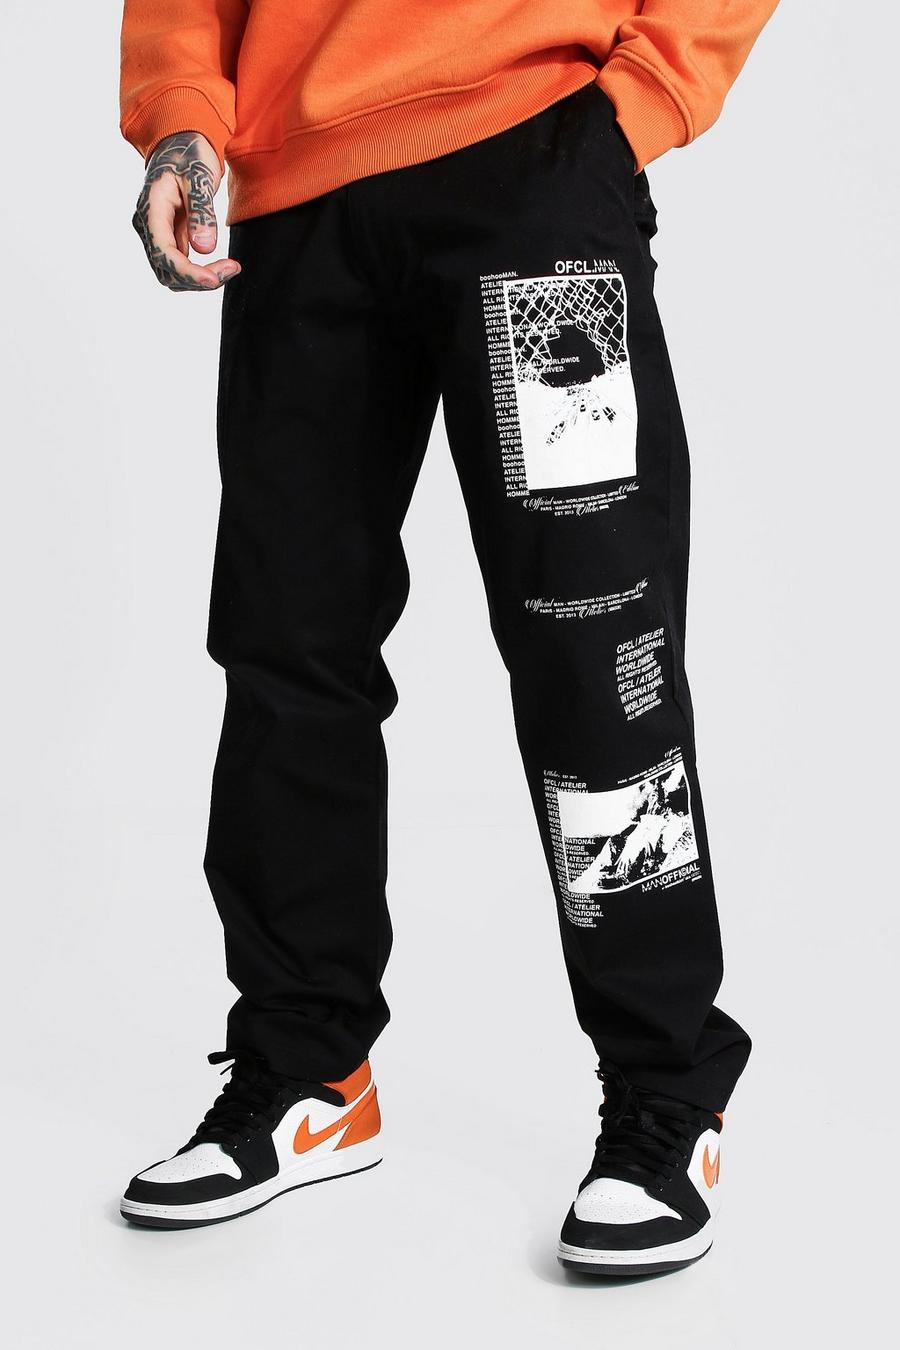 Pantaloni Chino rilassati con grafica stampata, Black nero